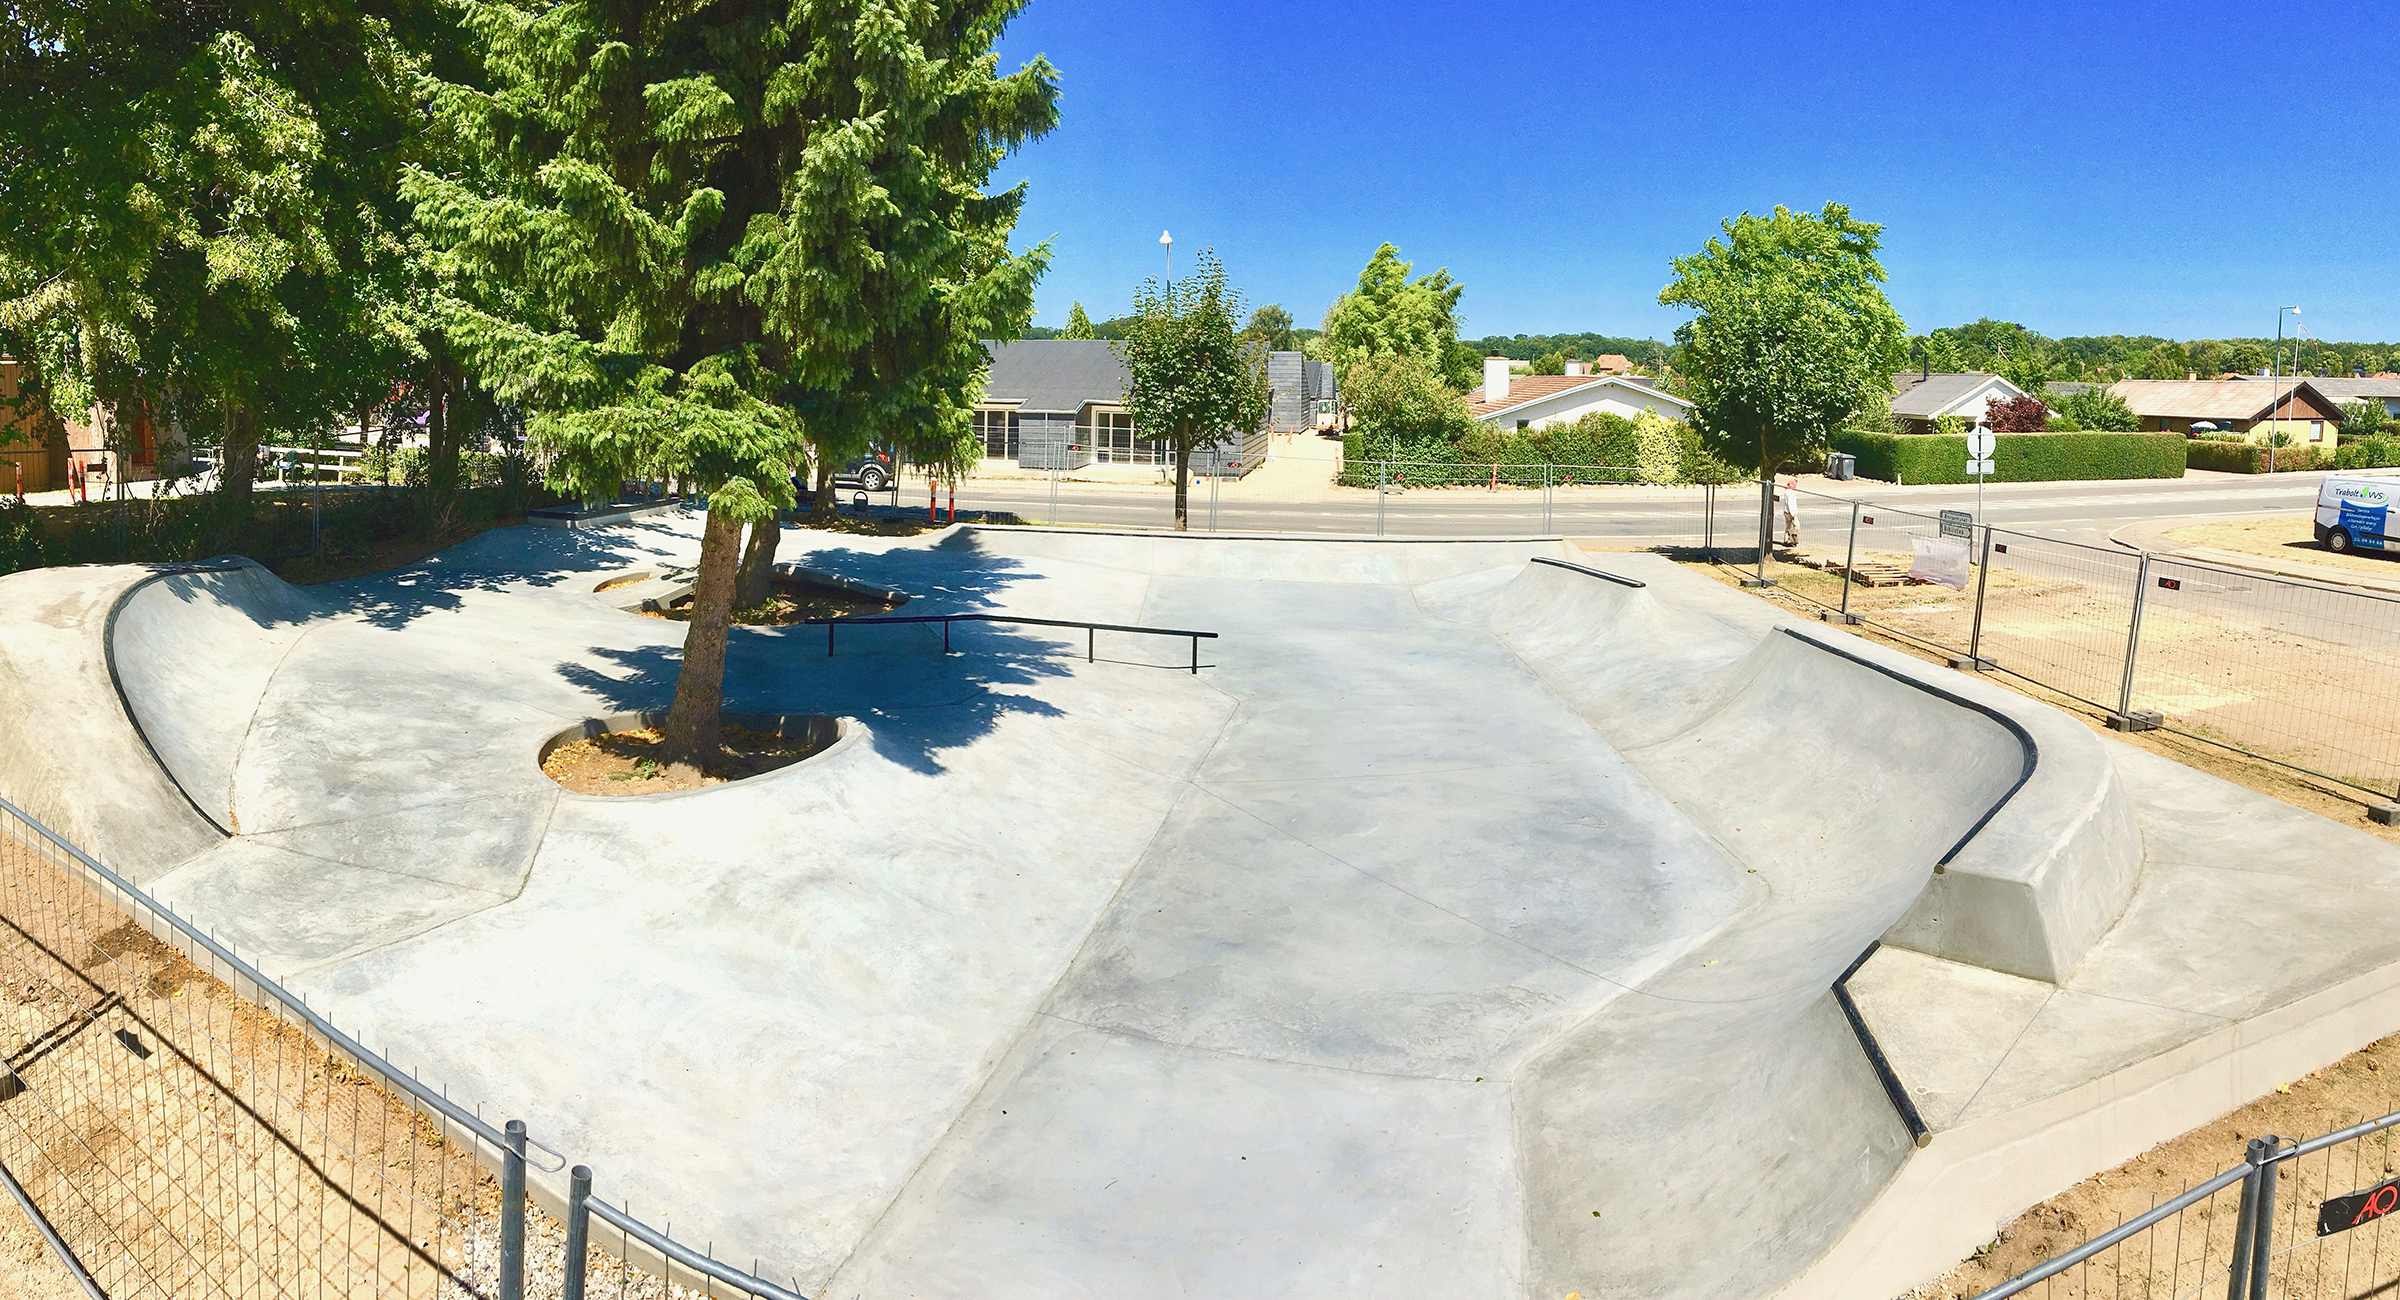 Billedet viser en indhegnet skatepark med forskellige buede betonramper og et rail